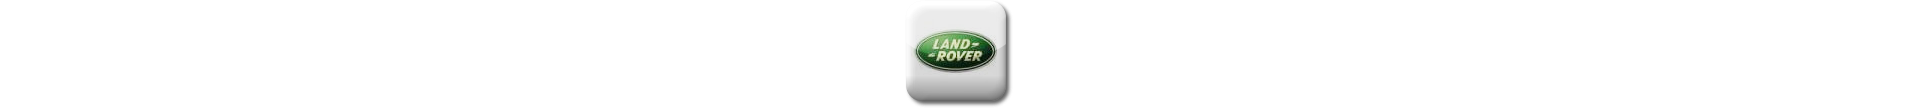 Boitier additionnel Land Rover Diesel Evolussem